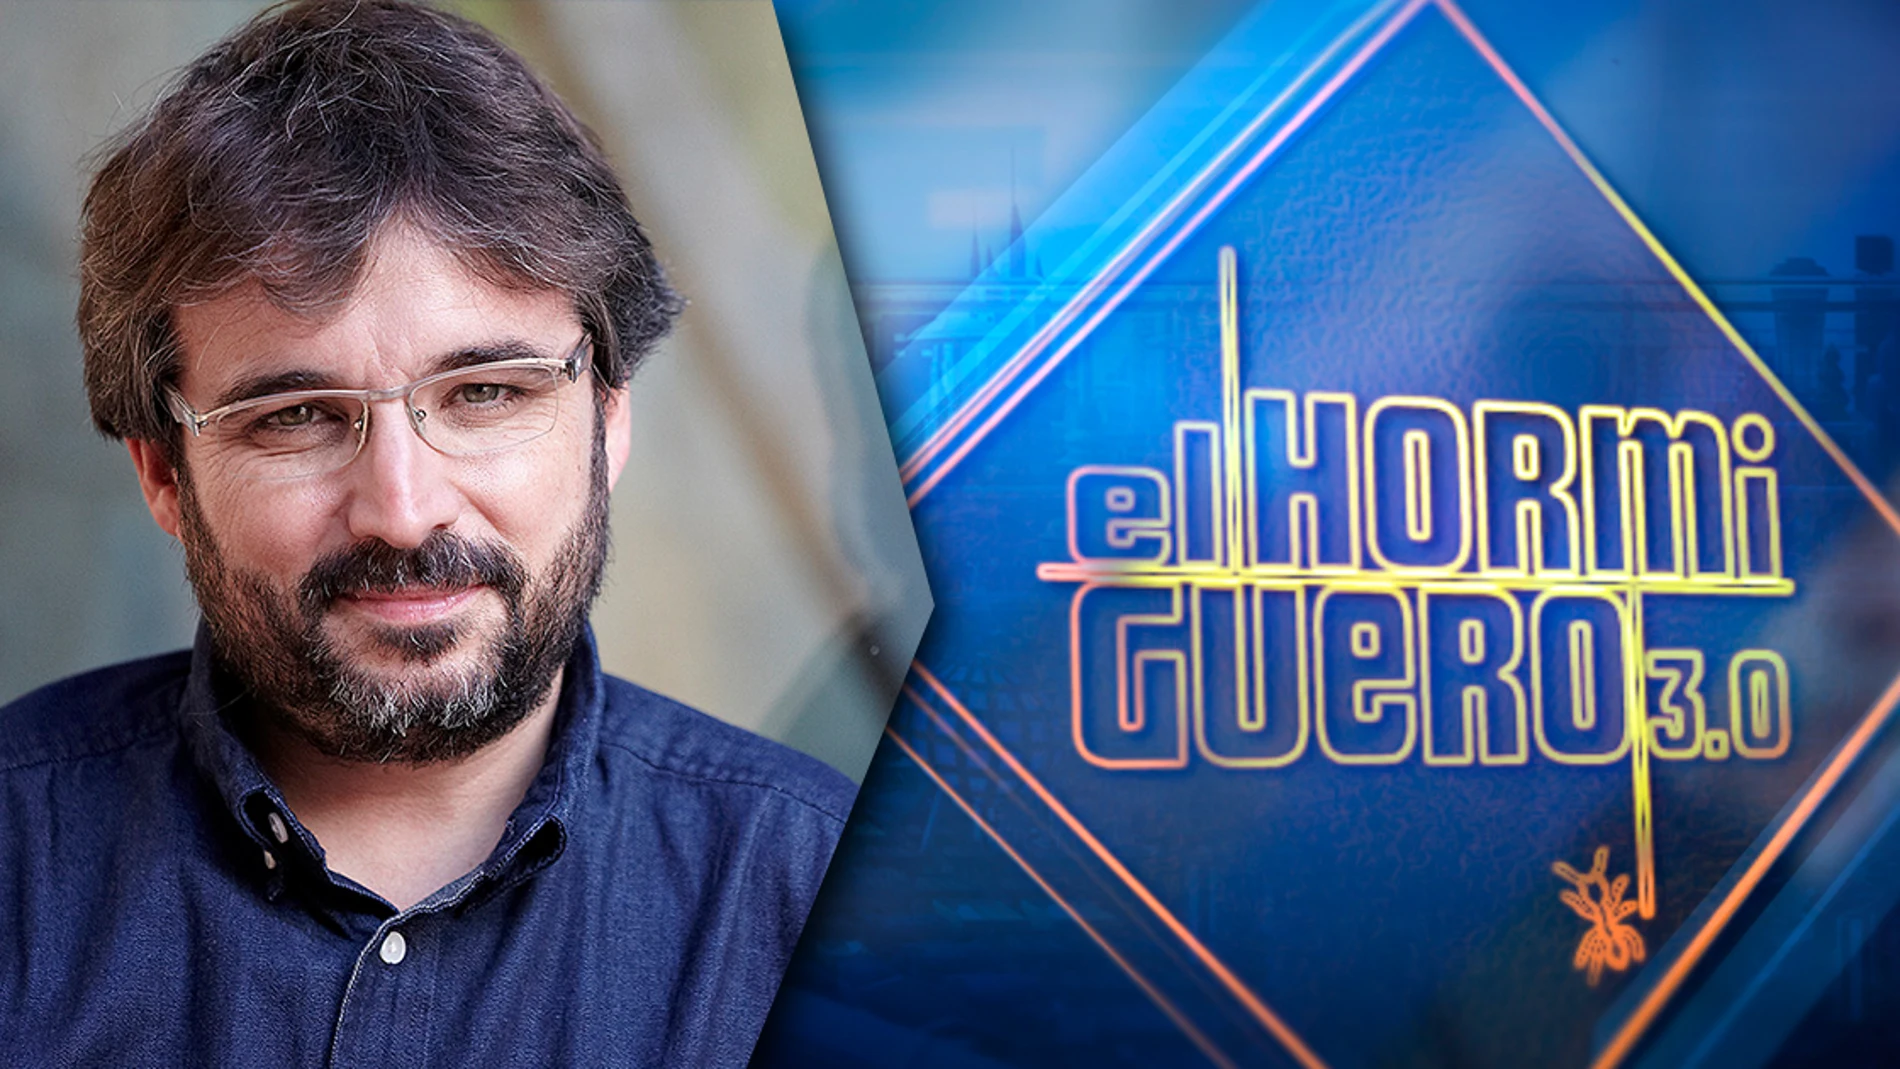 El miércoles, Jordi Évole viene a divertirse a 'El Hormiguero 3.0'